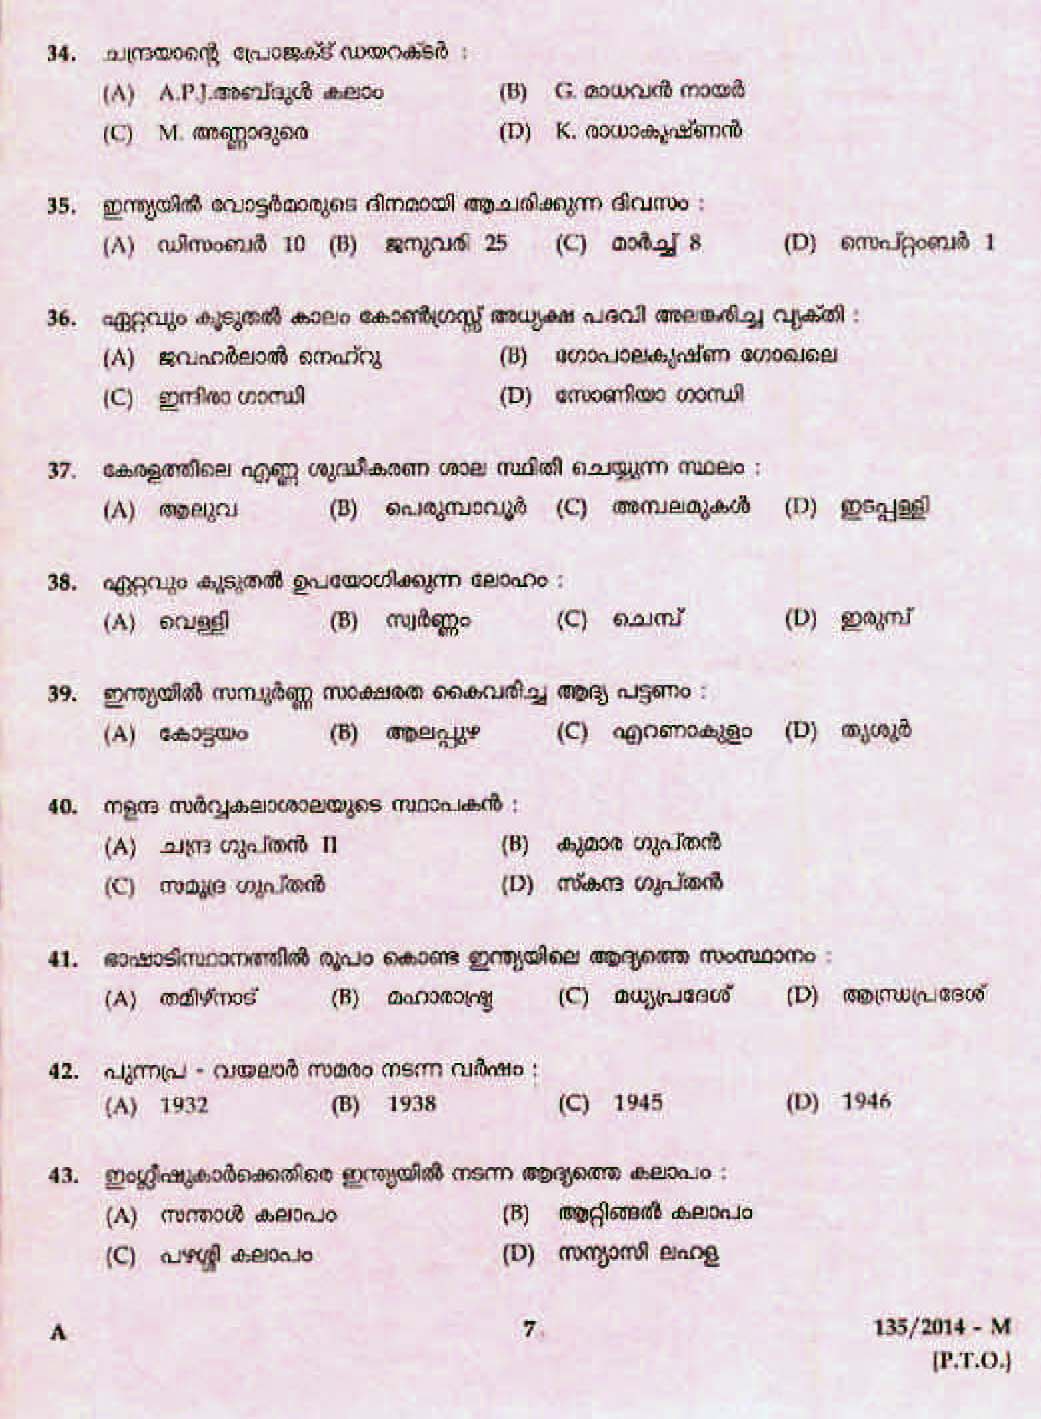 Kerala Last Grade Servants Exam 2014 Question Paper Code 1352014 M 5